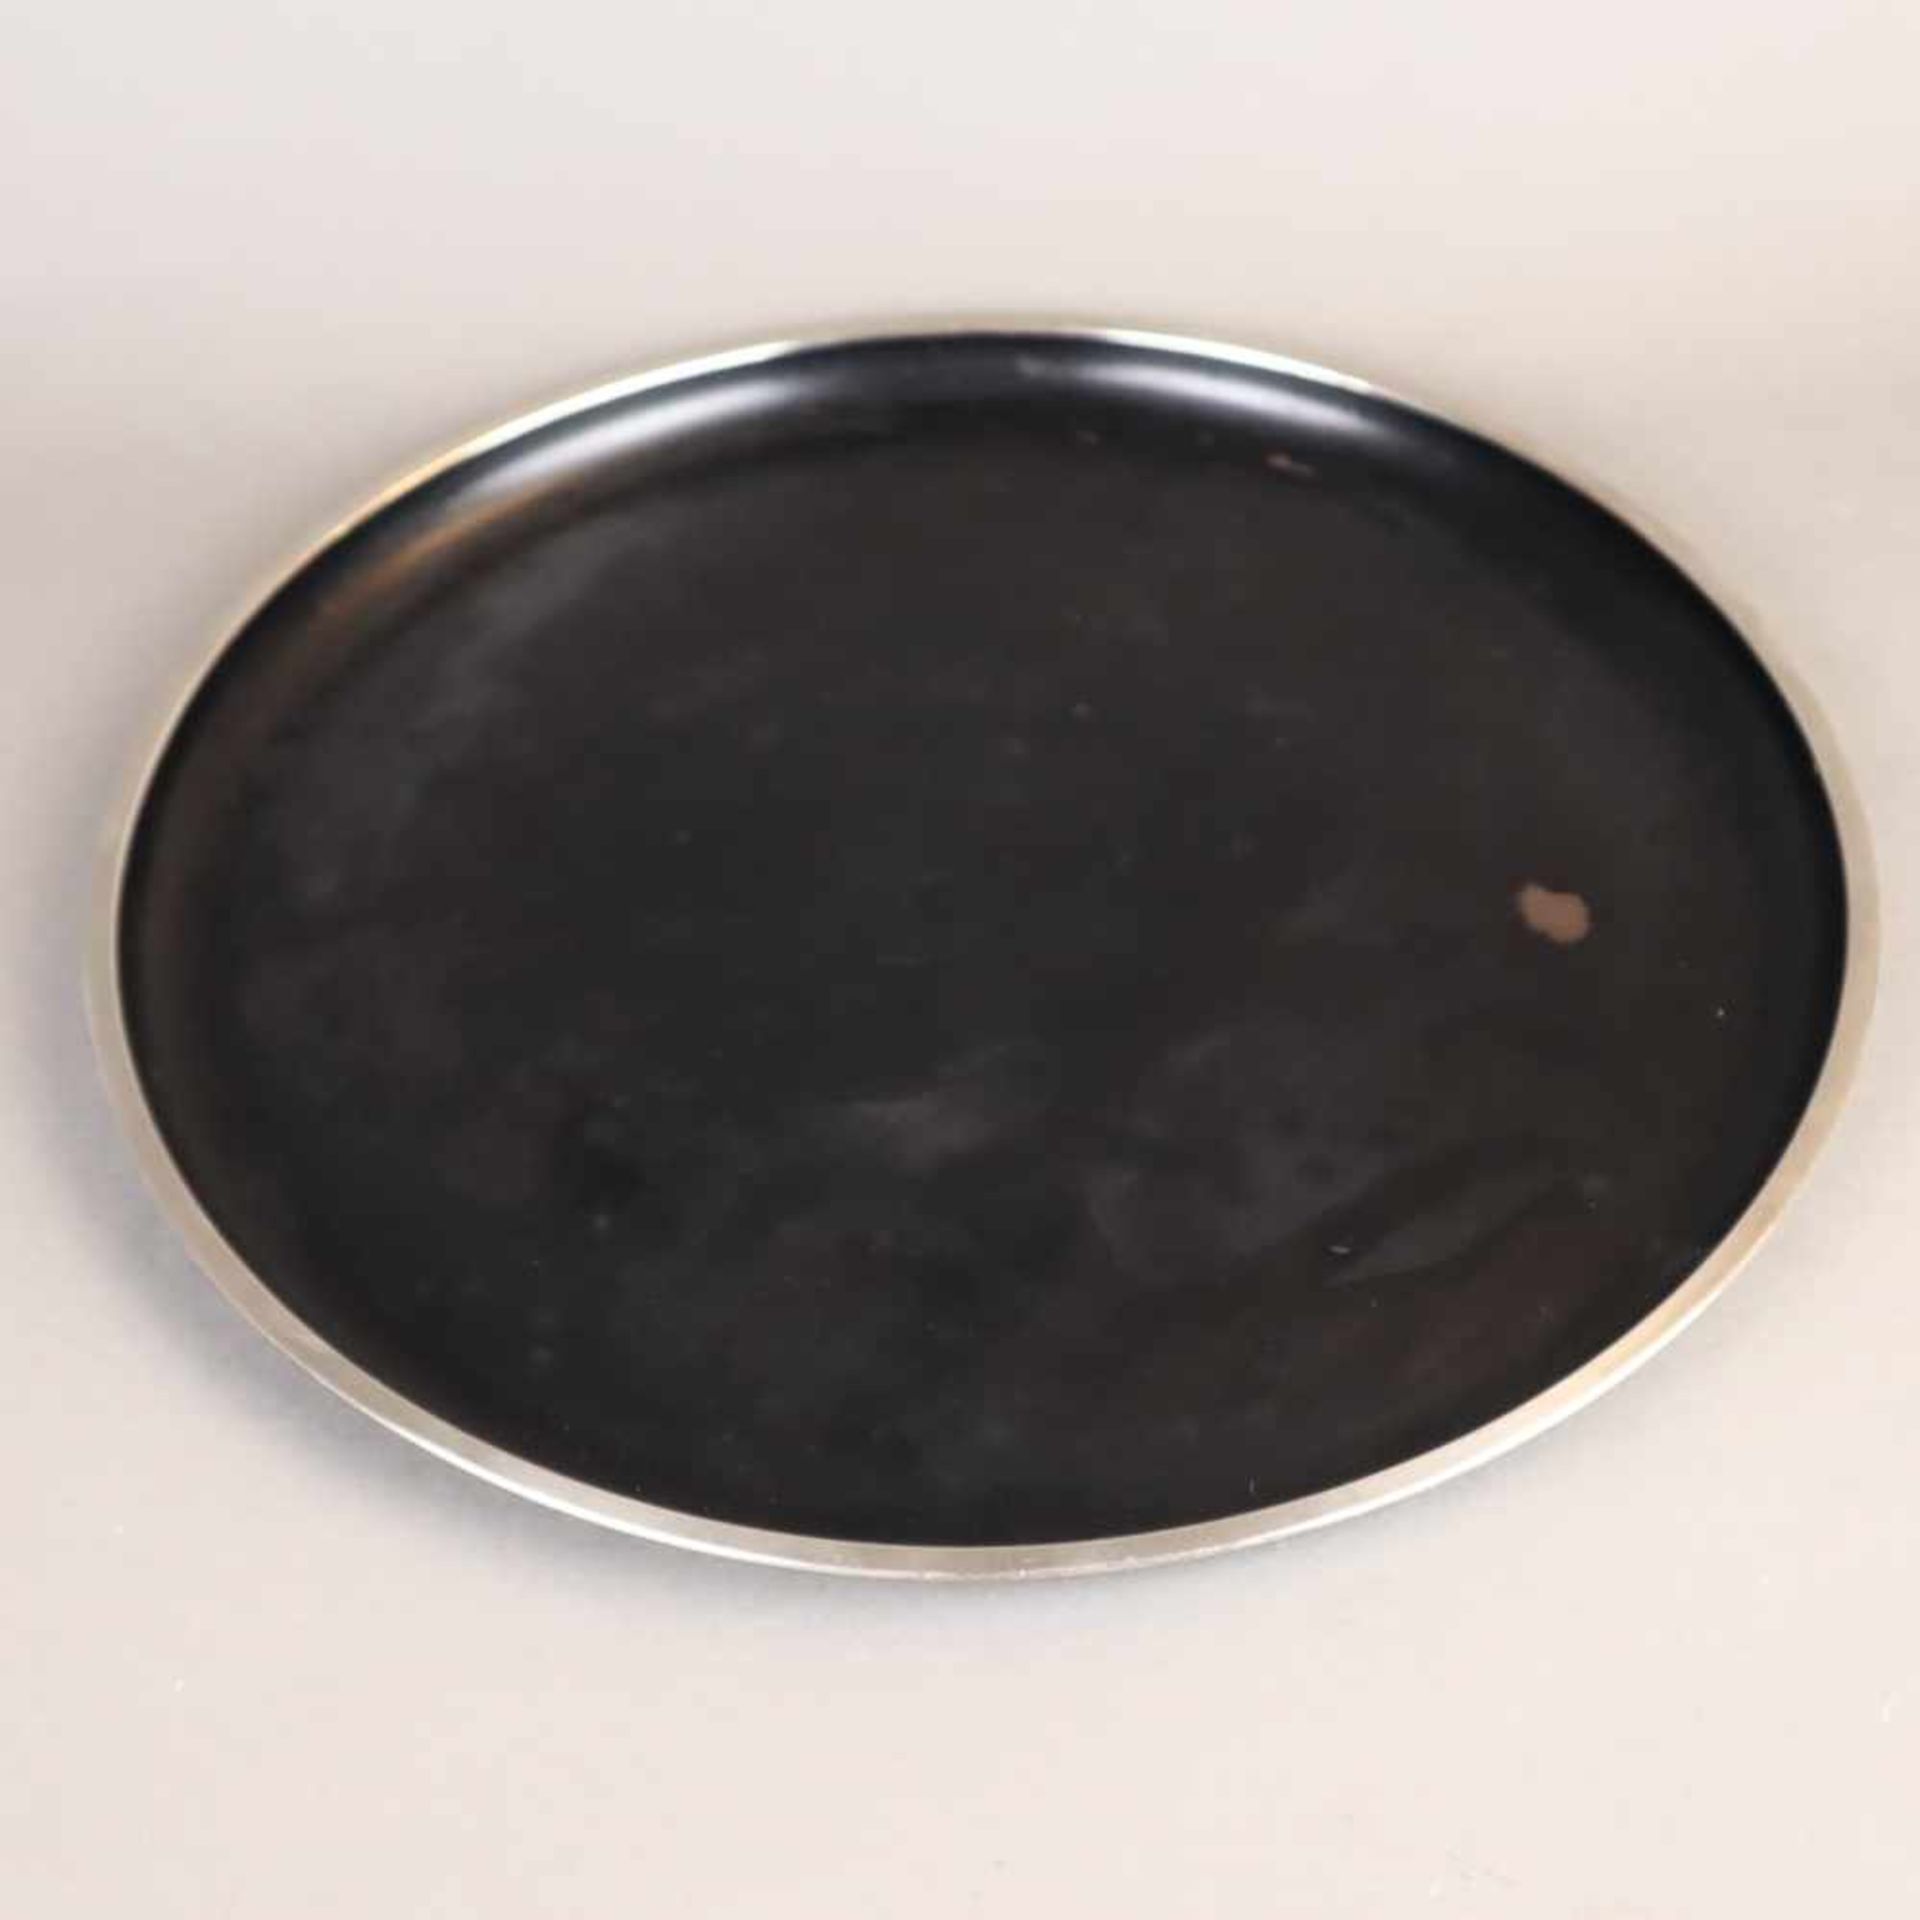 Metalltablett - Ruppelwerke, Gotha, Entwurf Marianna Brandt, rundes schwarzes Metall-Tablett mit